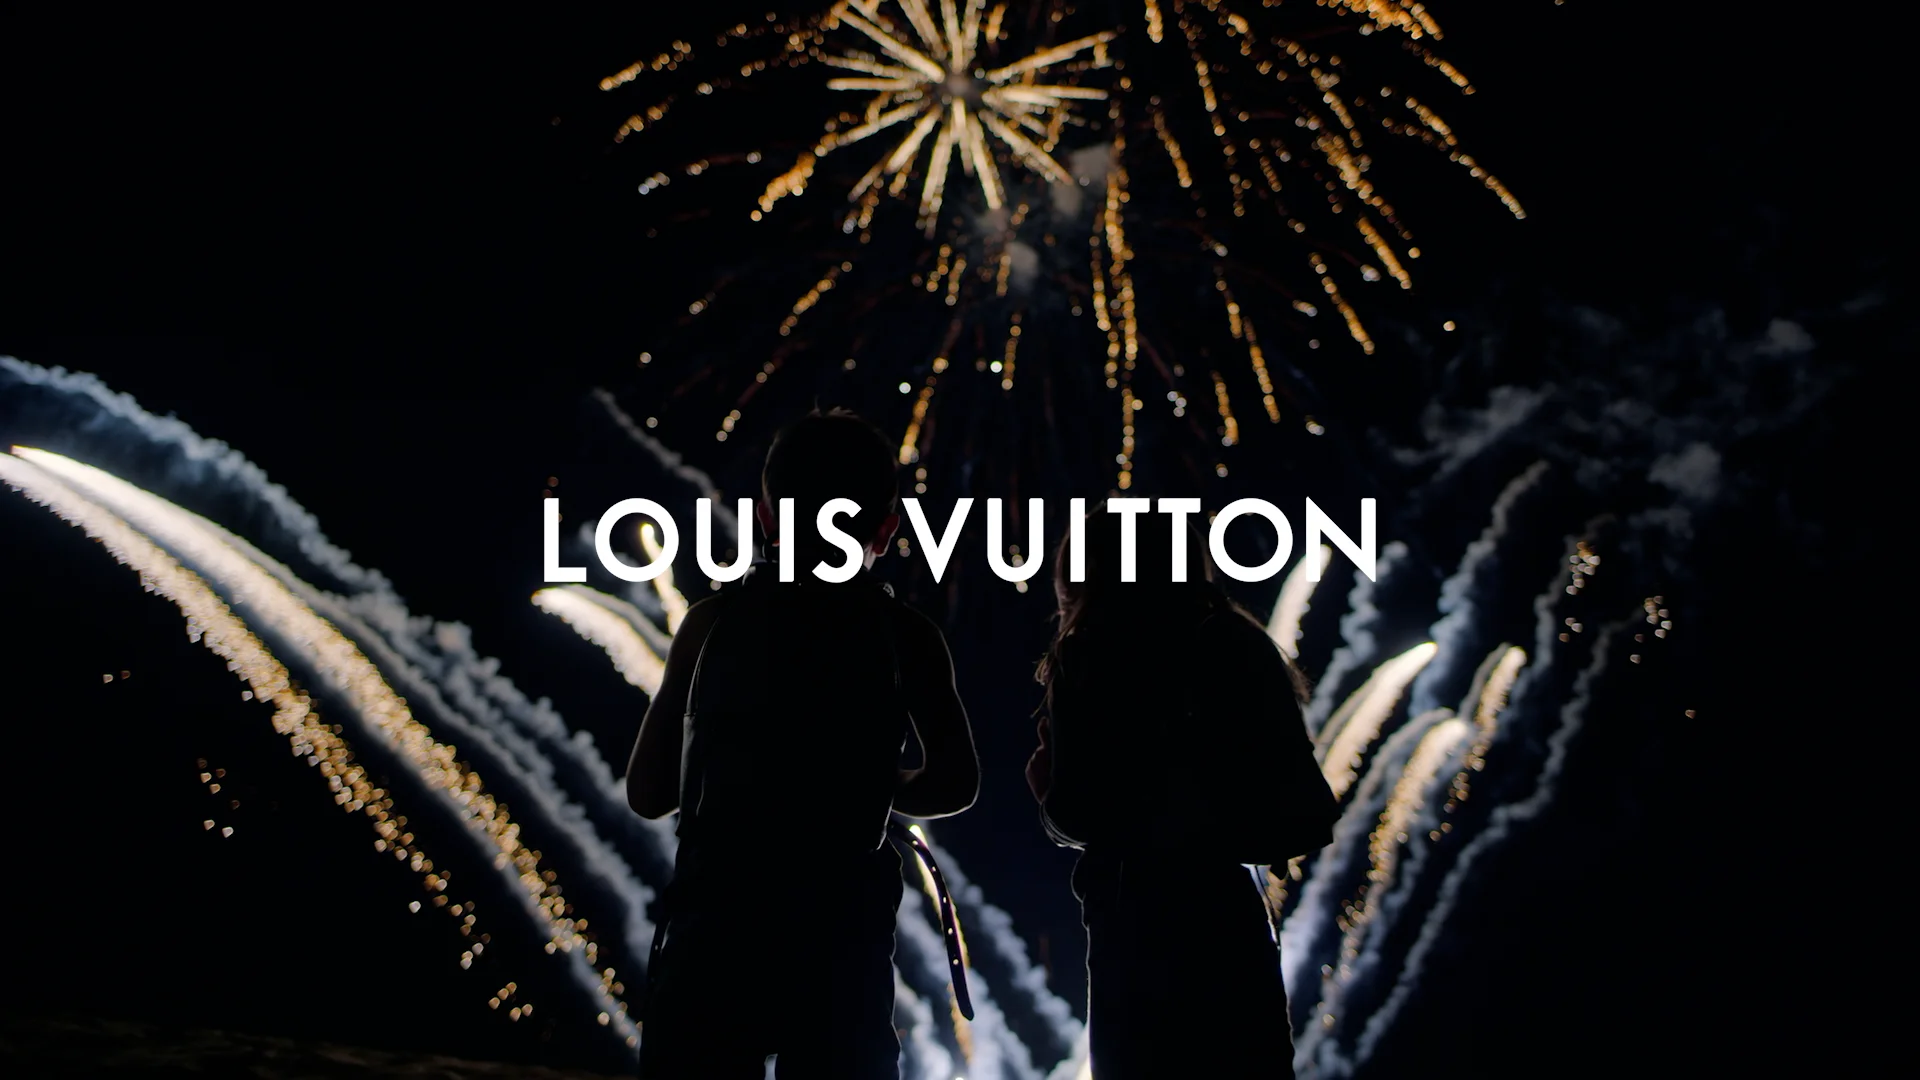 LOUIS VUITTON - TEXTILE on Vimeo